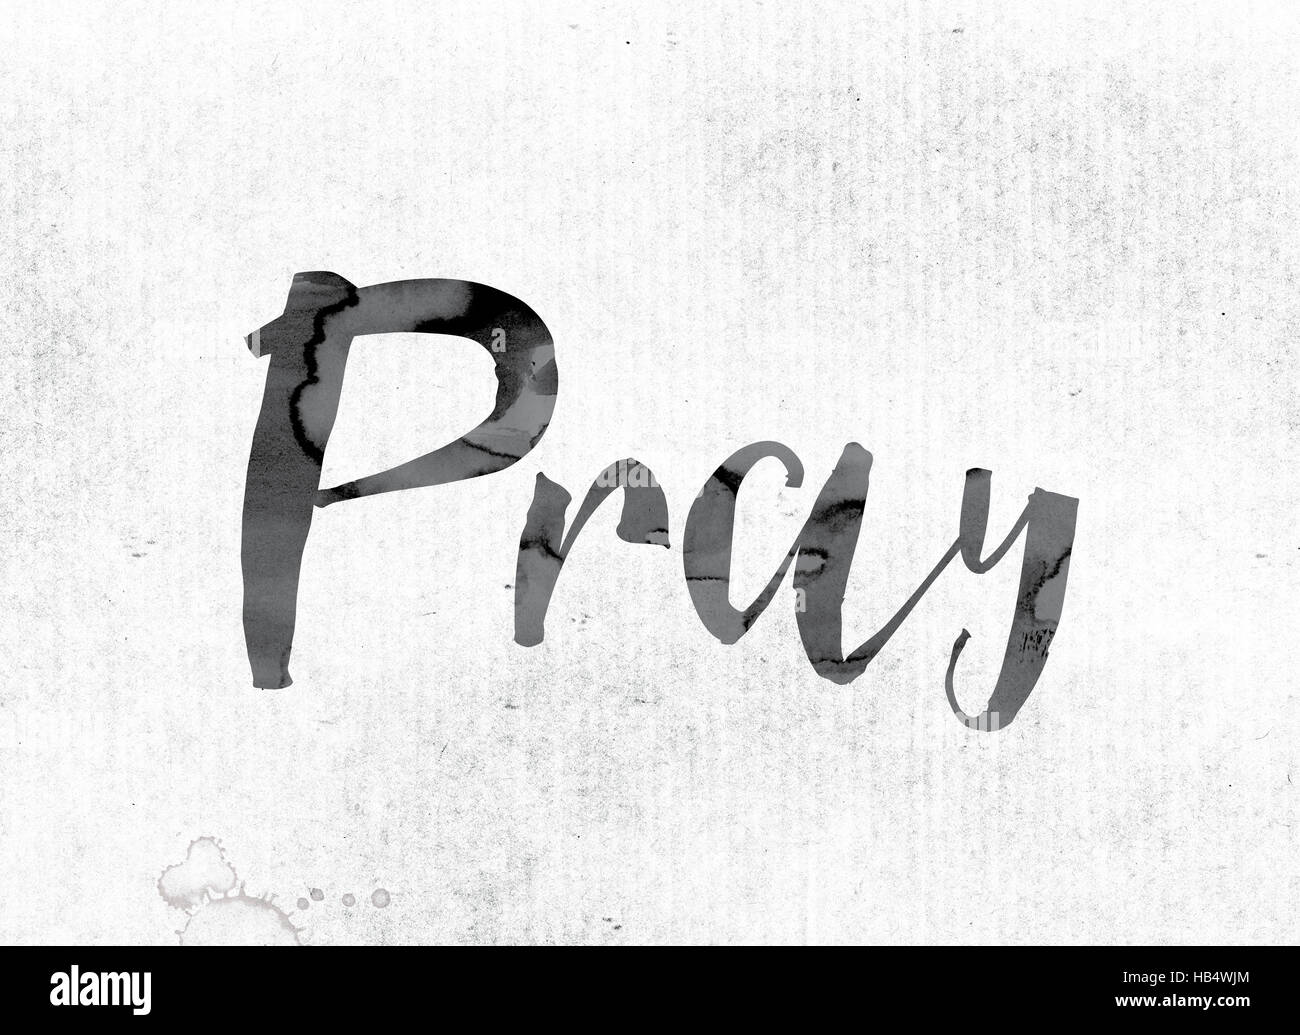 Le mot "prier" thème et concept sur aquarelle ou d'encre sur un papier blanc. Banque D'Images